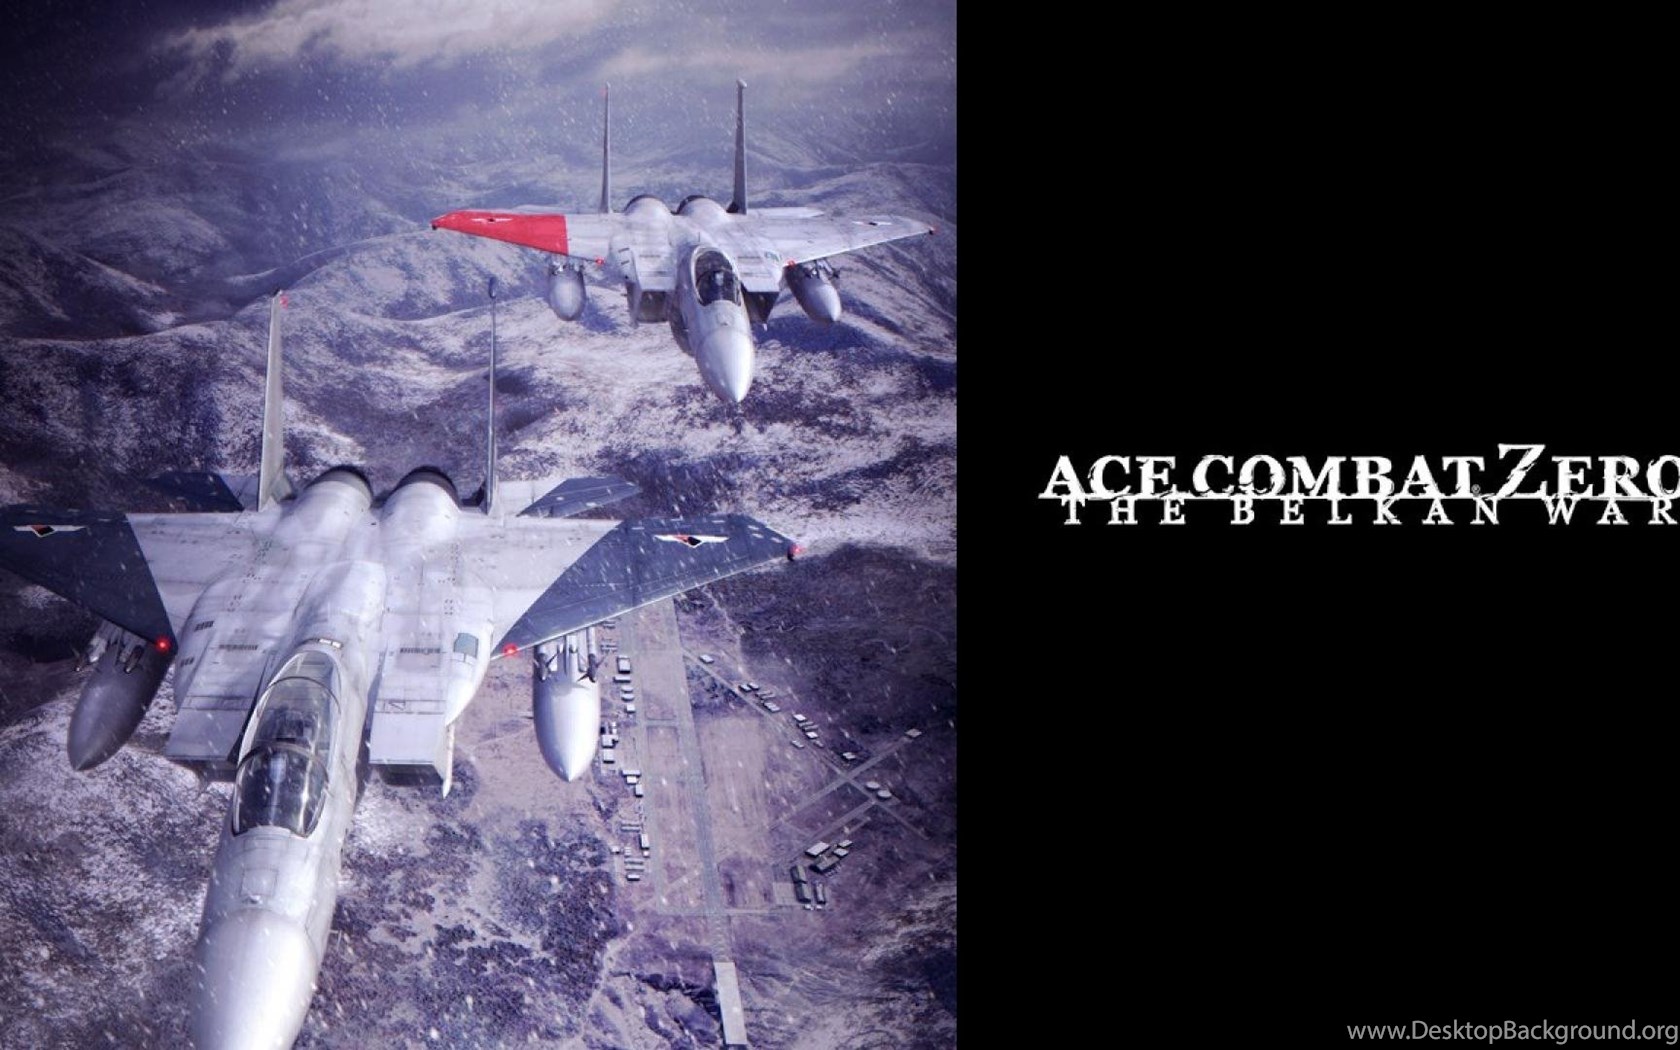 Ace Combat Zero The Belkan War Hd Wallpapers Wallpapers Desktop Background